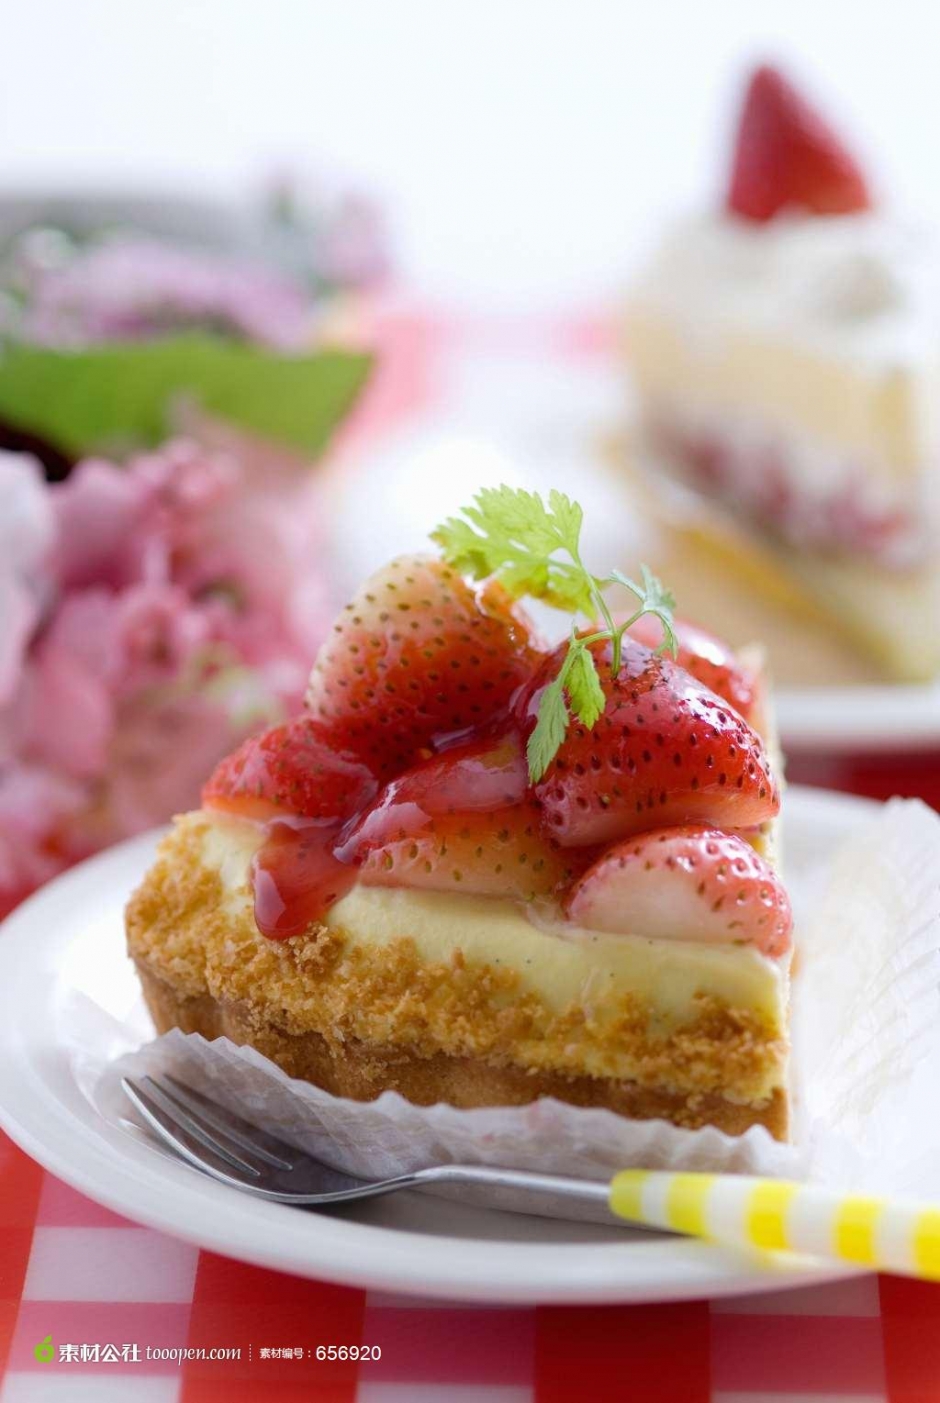 简约草莓蛋糕图片 草莓蛋糕块图片